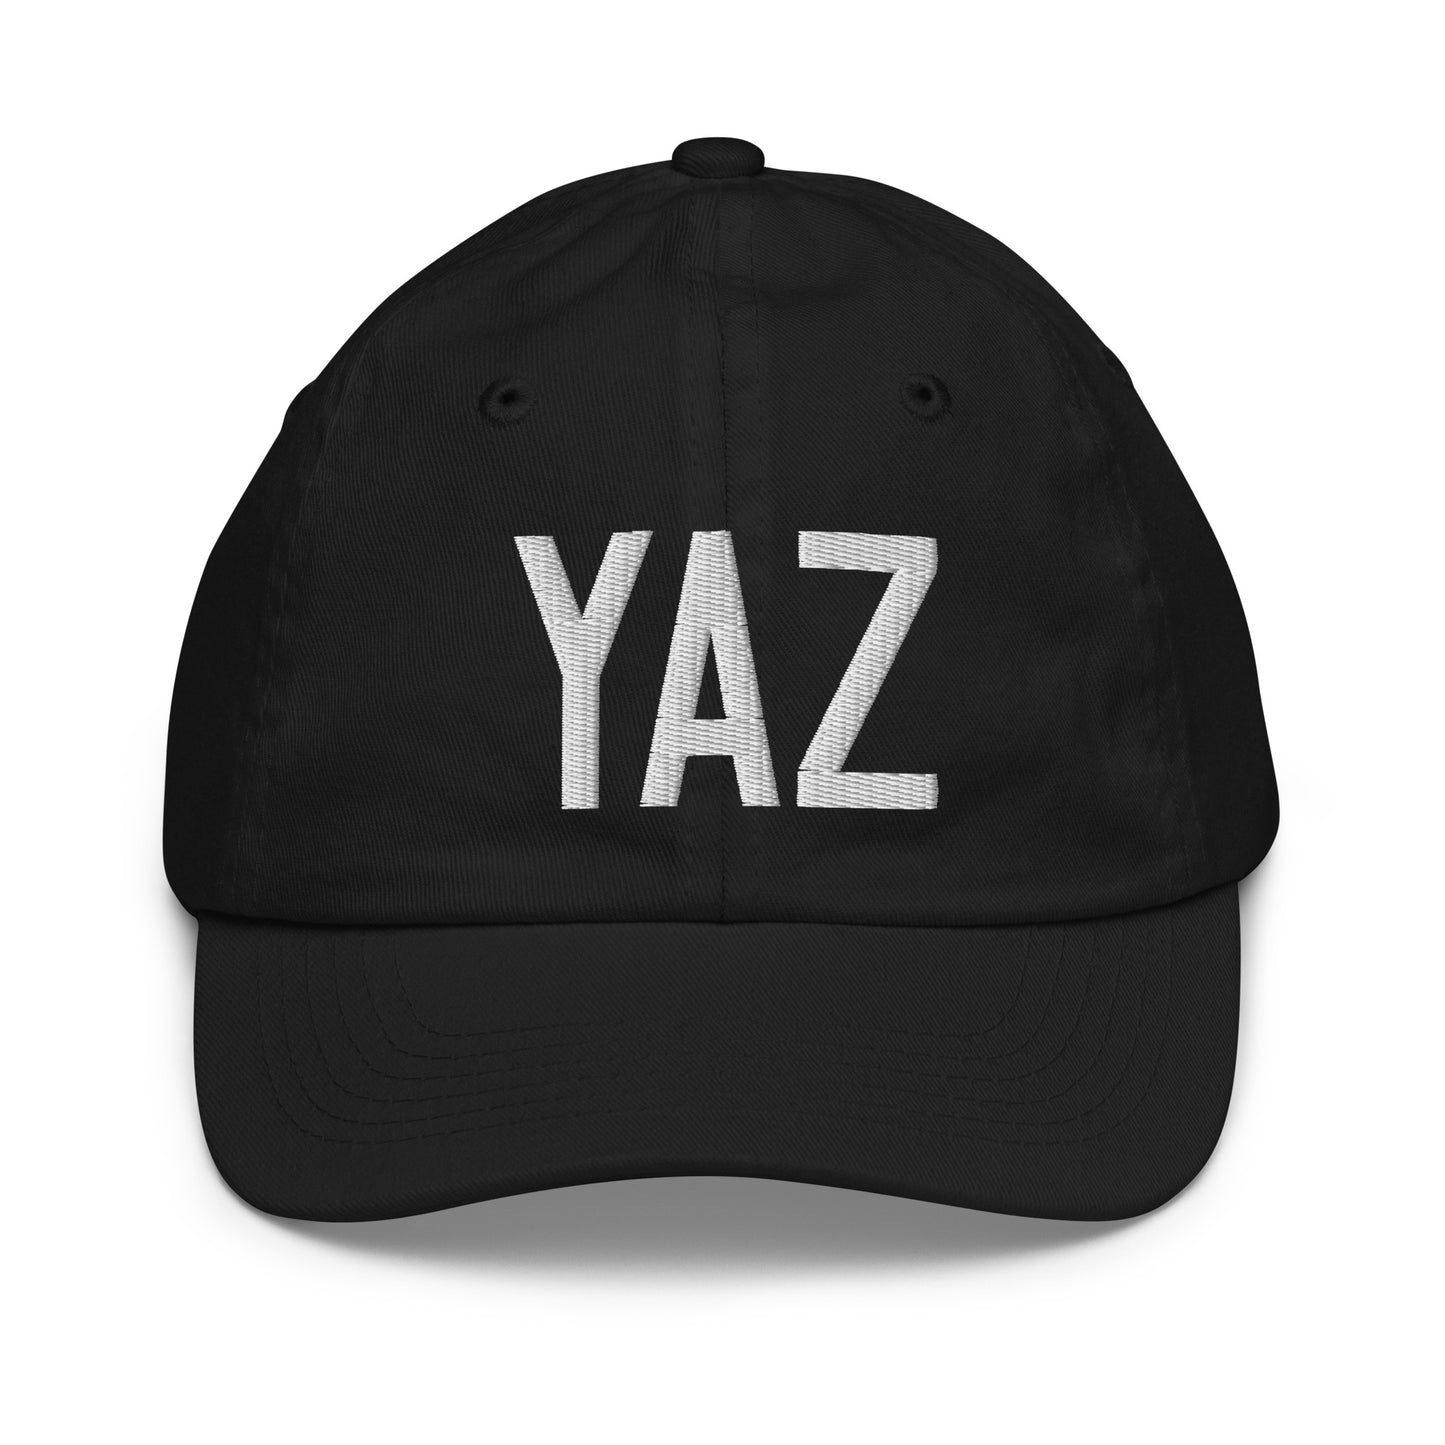 Airport Code Kid's Baseball Cap - White • YAZ Tofino • YHM Designs - Image 11